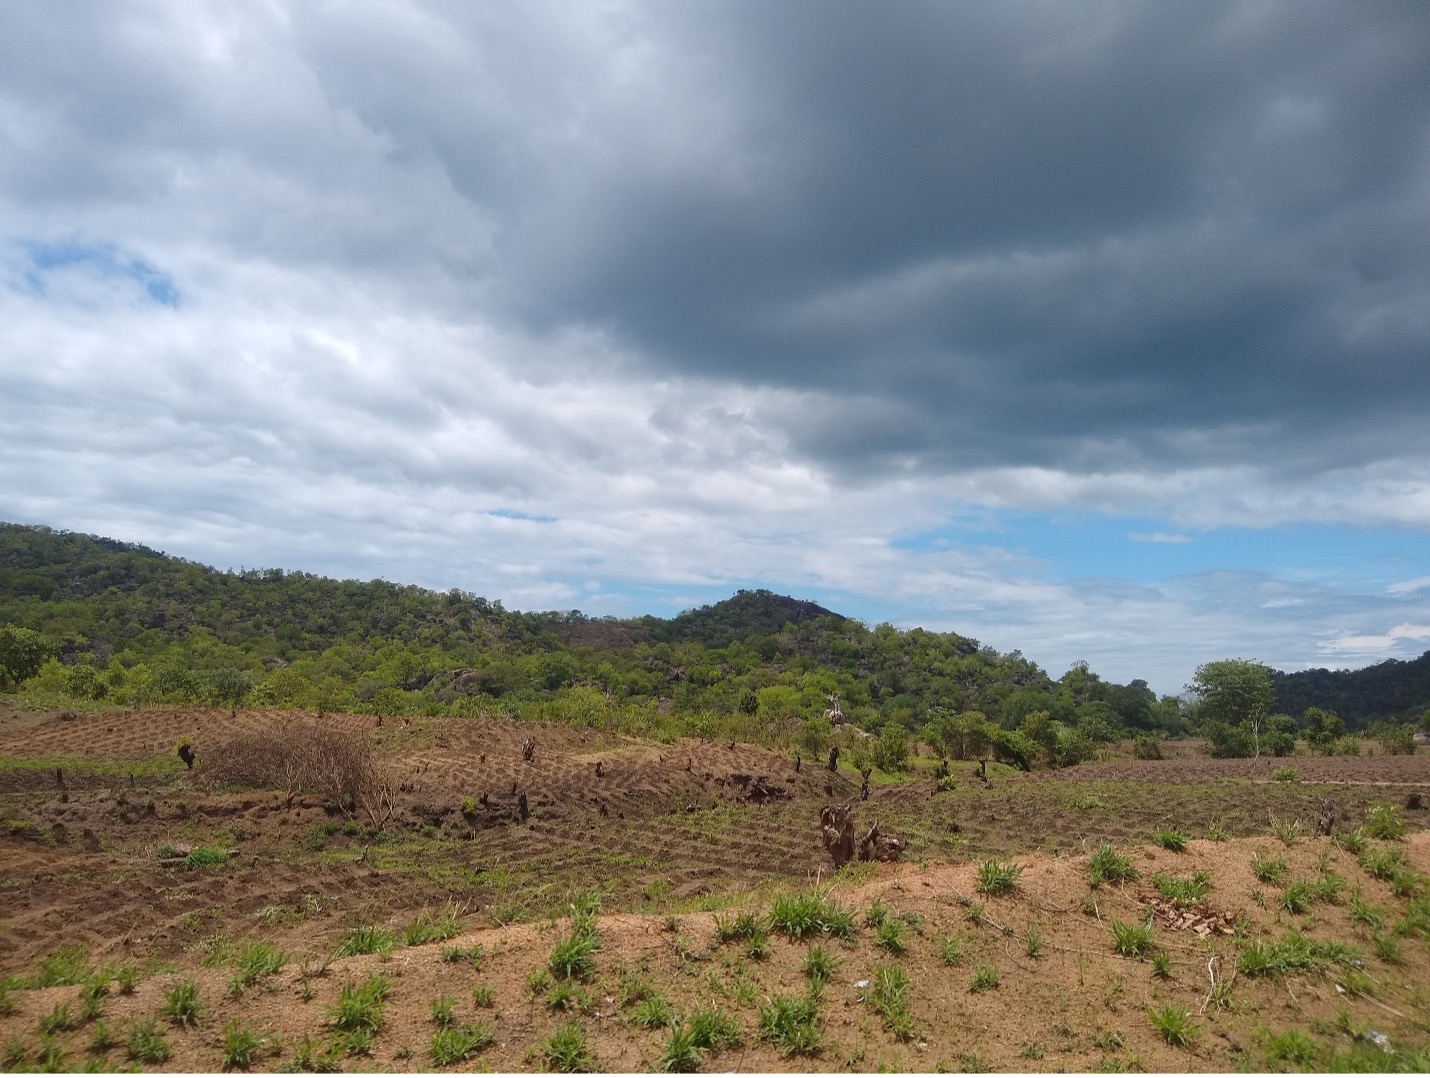 Je bekijkt nu Regen als zegen en als zorg: praten over het weer in Malawi